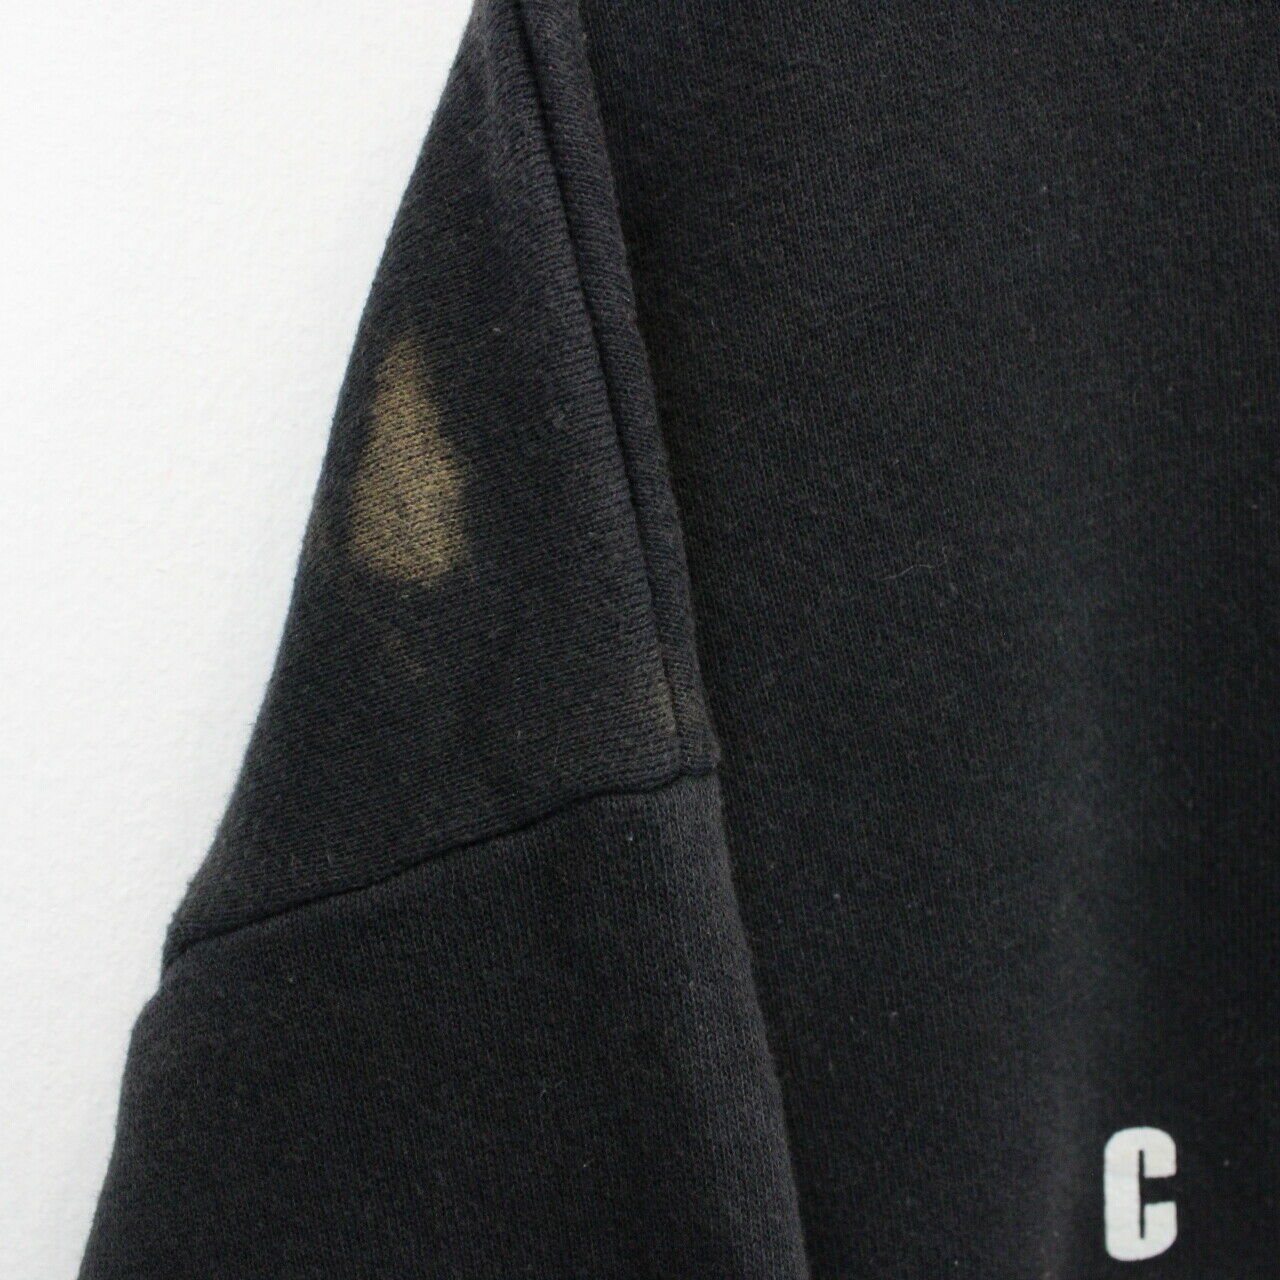 NFL Cincinnati BENGALS Sweatshirt Black | XL